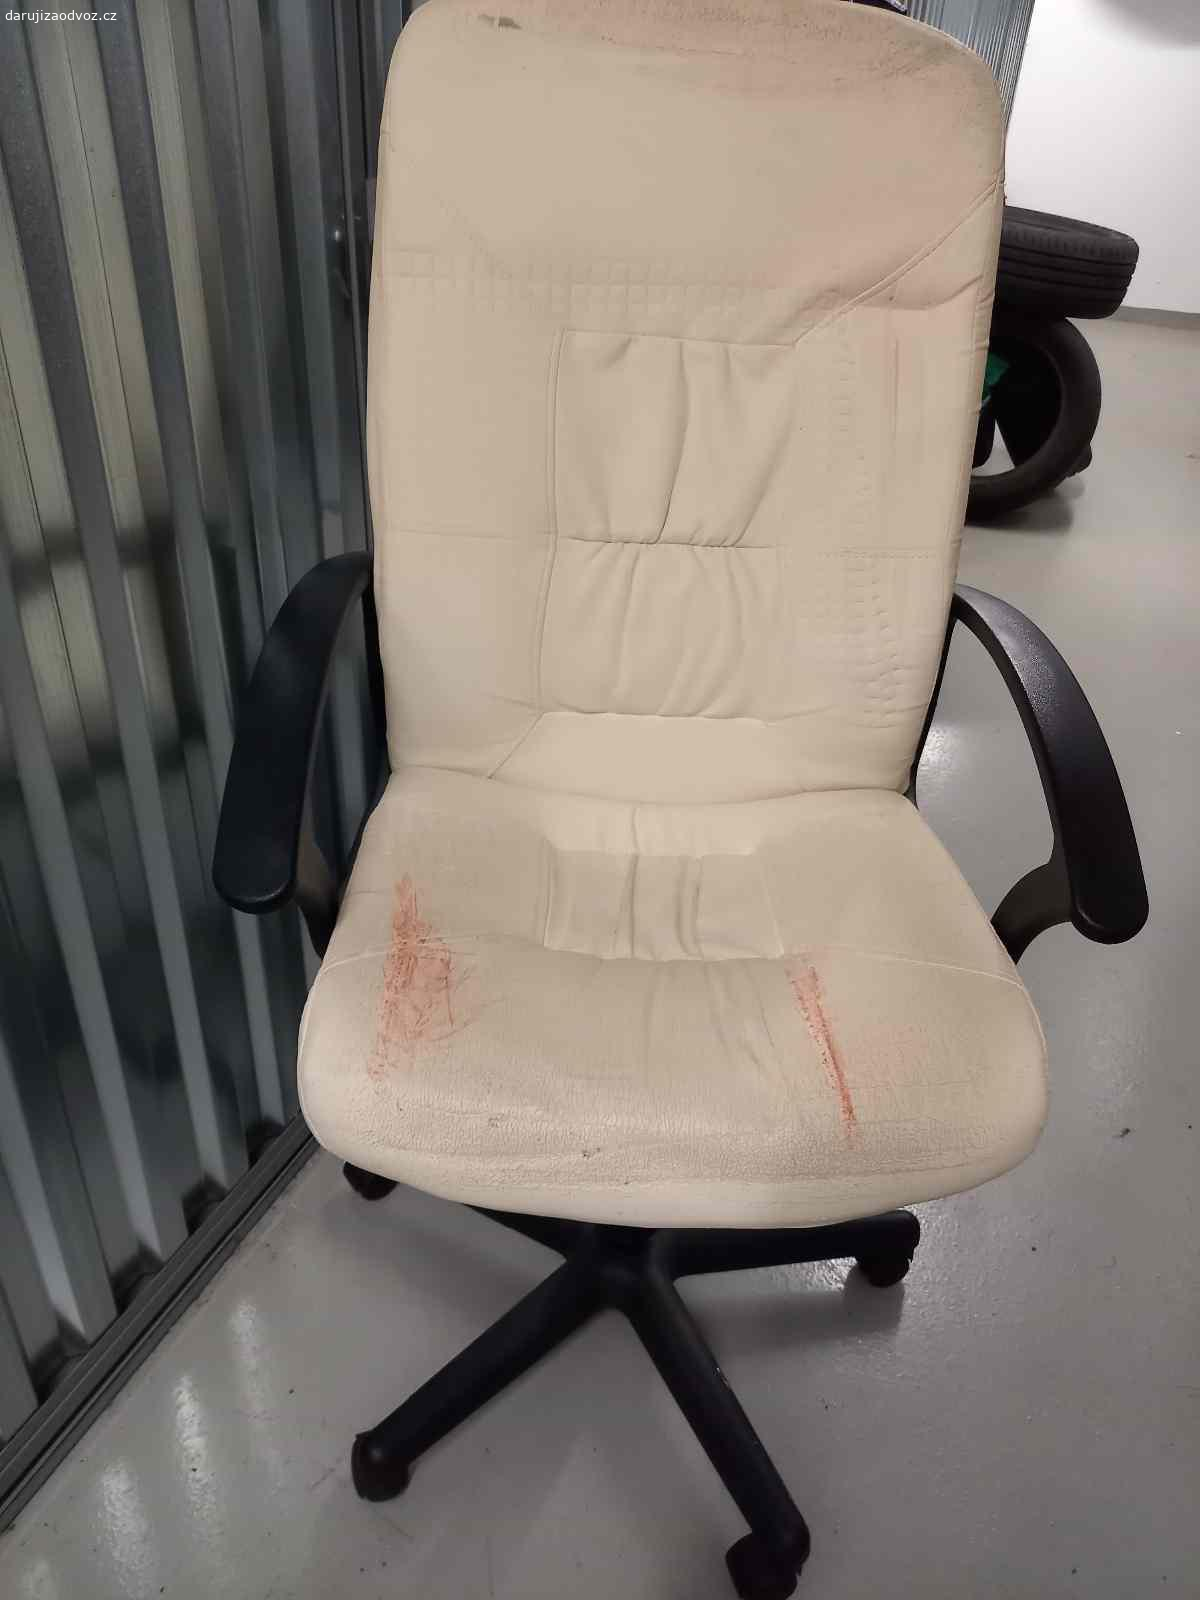 Kancelářská židle. Bílá kancelářská židle. Středně opotřebena, bez mechanických vad